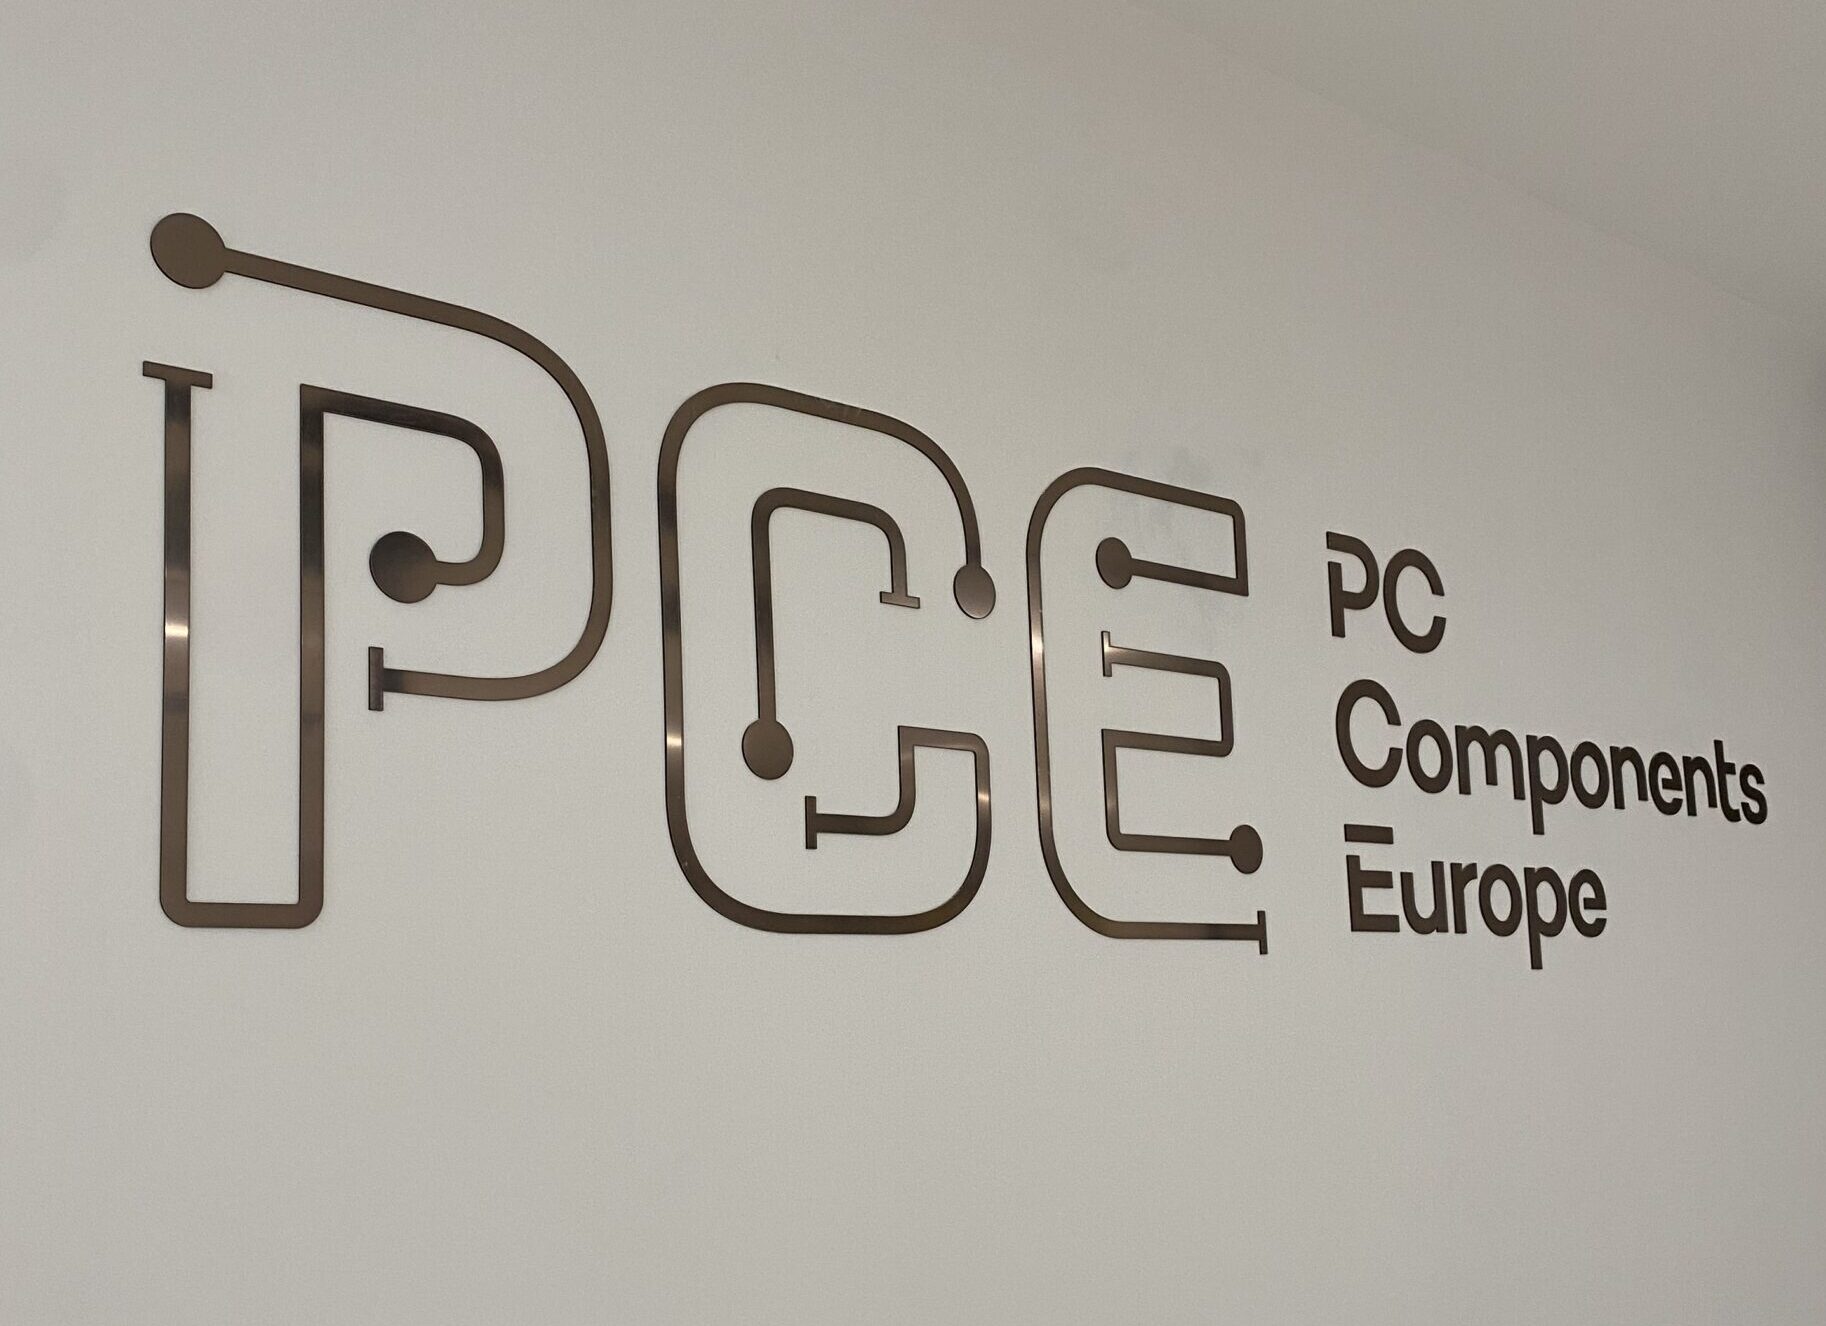 PC Components Europe Su distribuidor de componentes electromecánicos y electrónicos con calidad y comodidadNuestra experiencia desde 2001